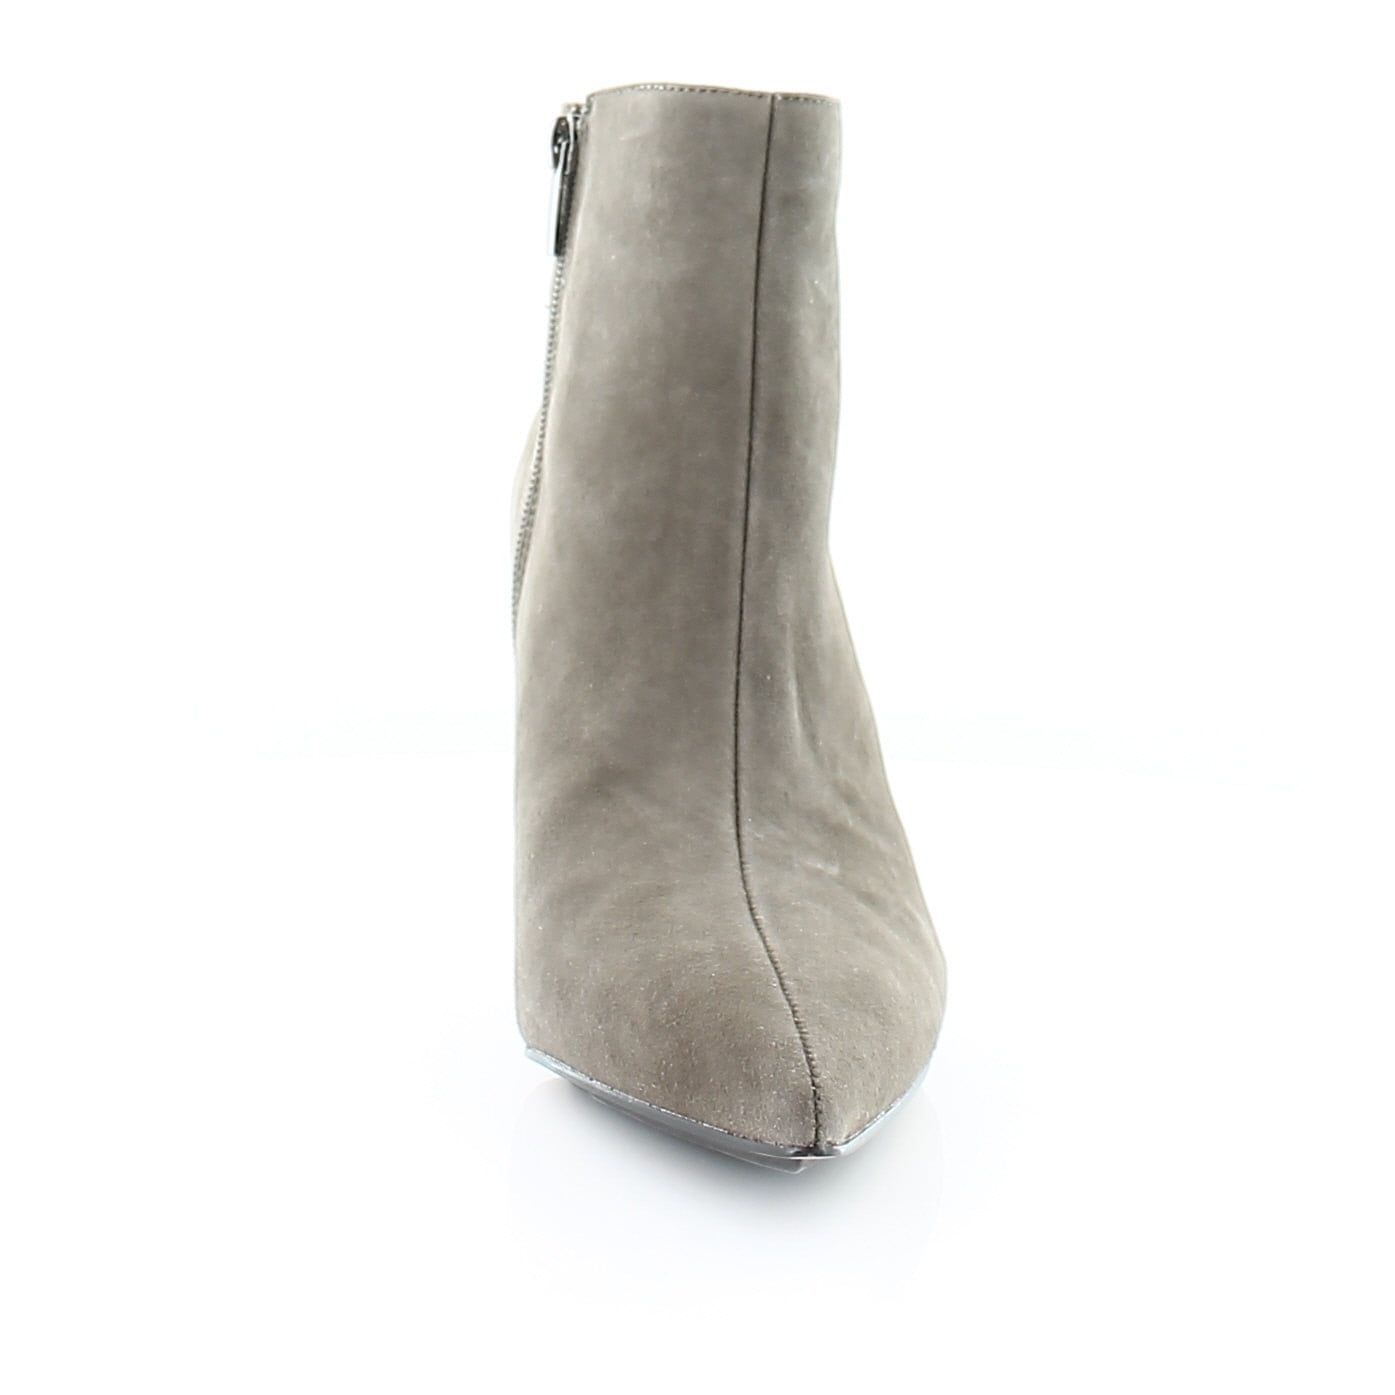 Vince Camuto Freikti Women's Boots Black Size 5.5 M - Walmart.com